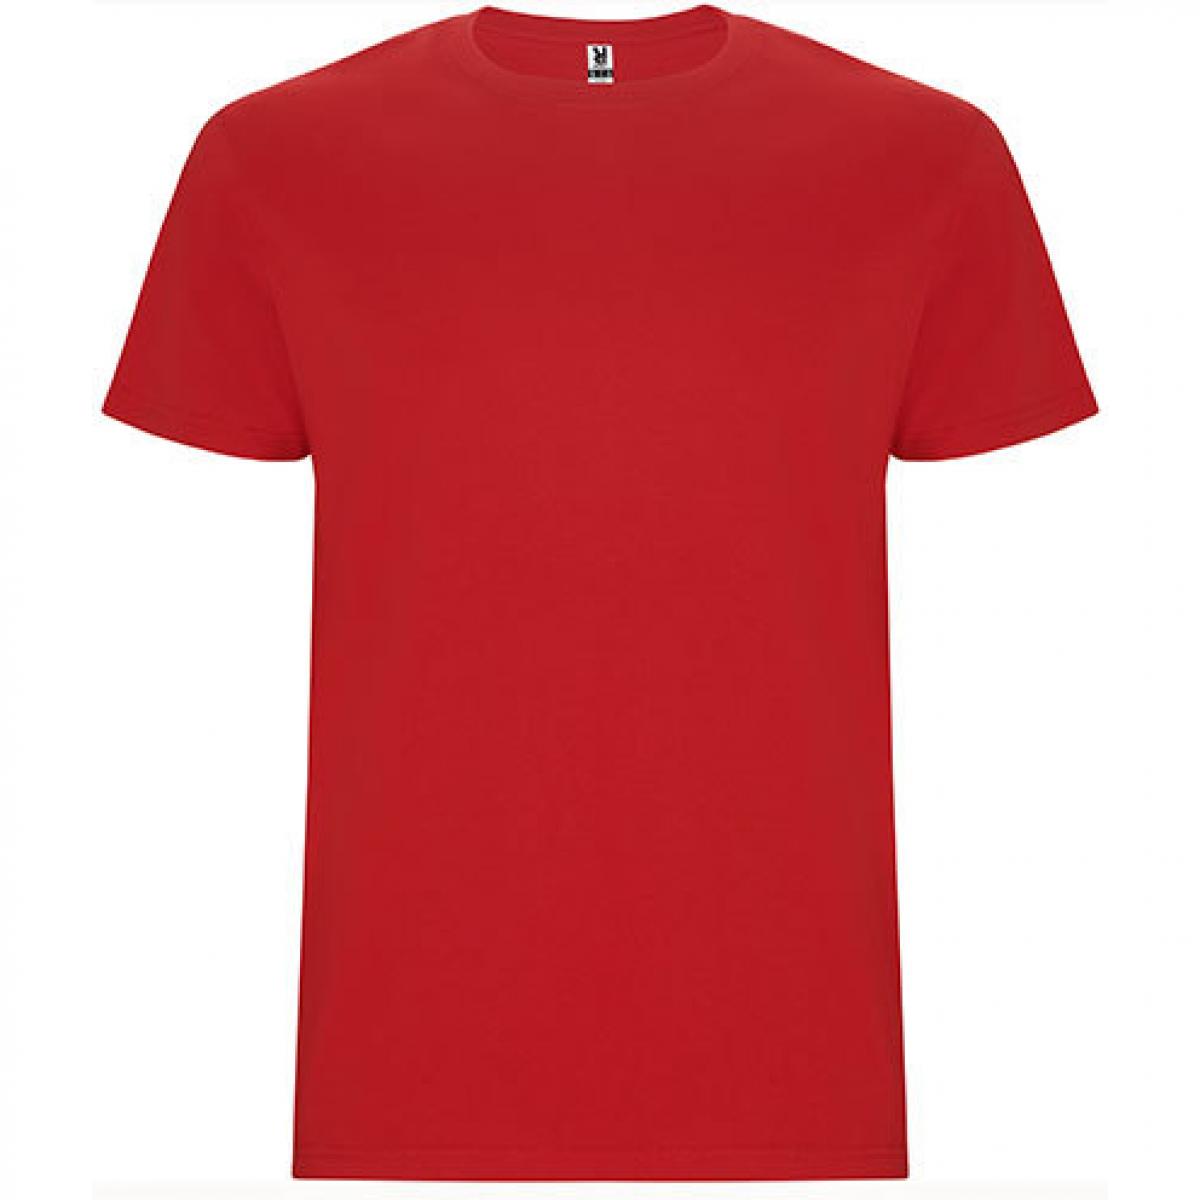 Hersteller: Roly Herstellernummer: CA6681 Artikelbezeichnung: Stafford T-Shirt - Doppellagiger Rundhalskragen Farbe: Red 60